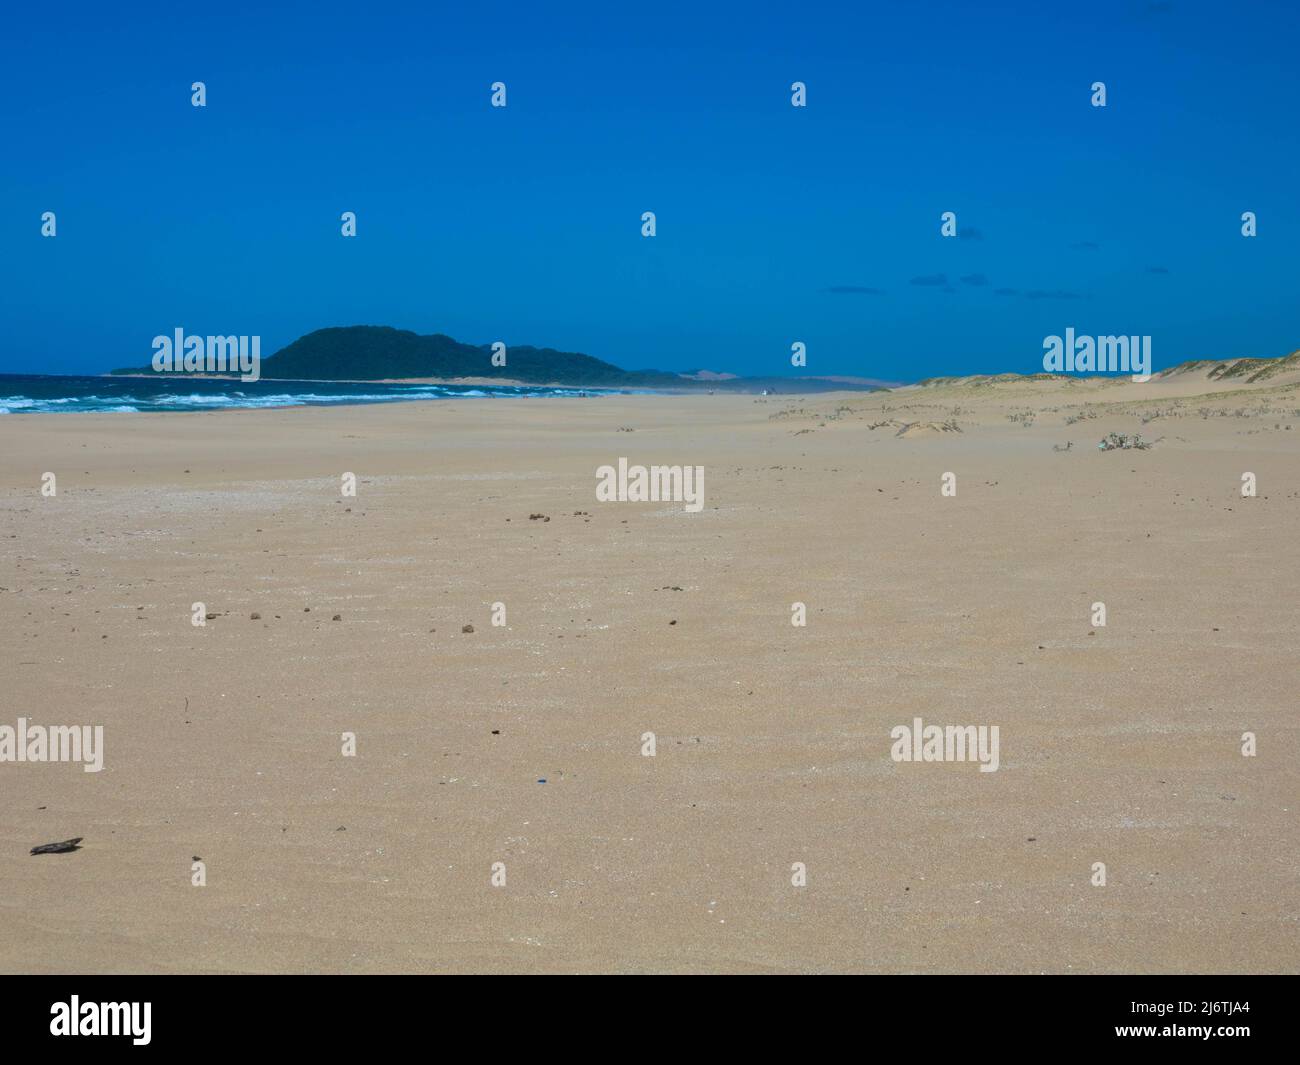 Spiaggia sabbiosa vuota sulla costa orientale del Sud Africa nel Parco Nazionale della Baia di Sodwana nel Parco delle paludi di iSimangaliso, Maputaland, Provincia di KwaZulu-Natal. Foto Stock